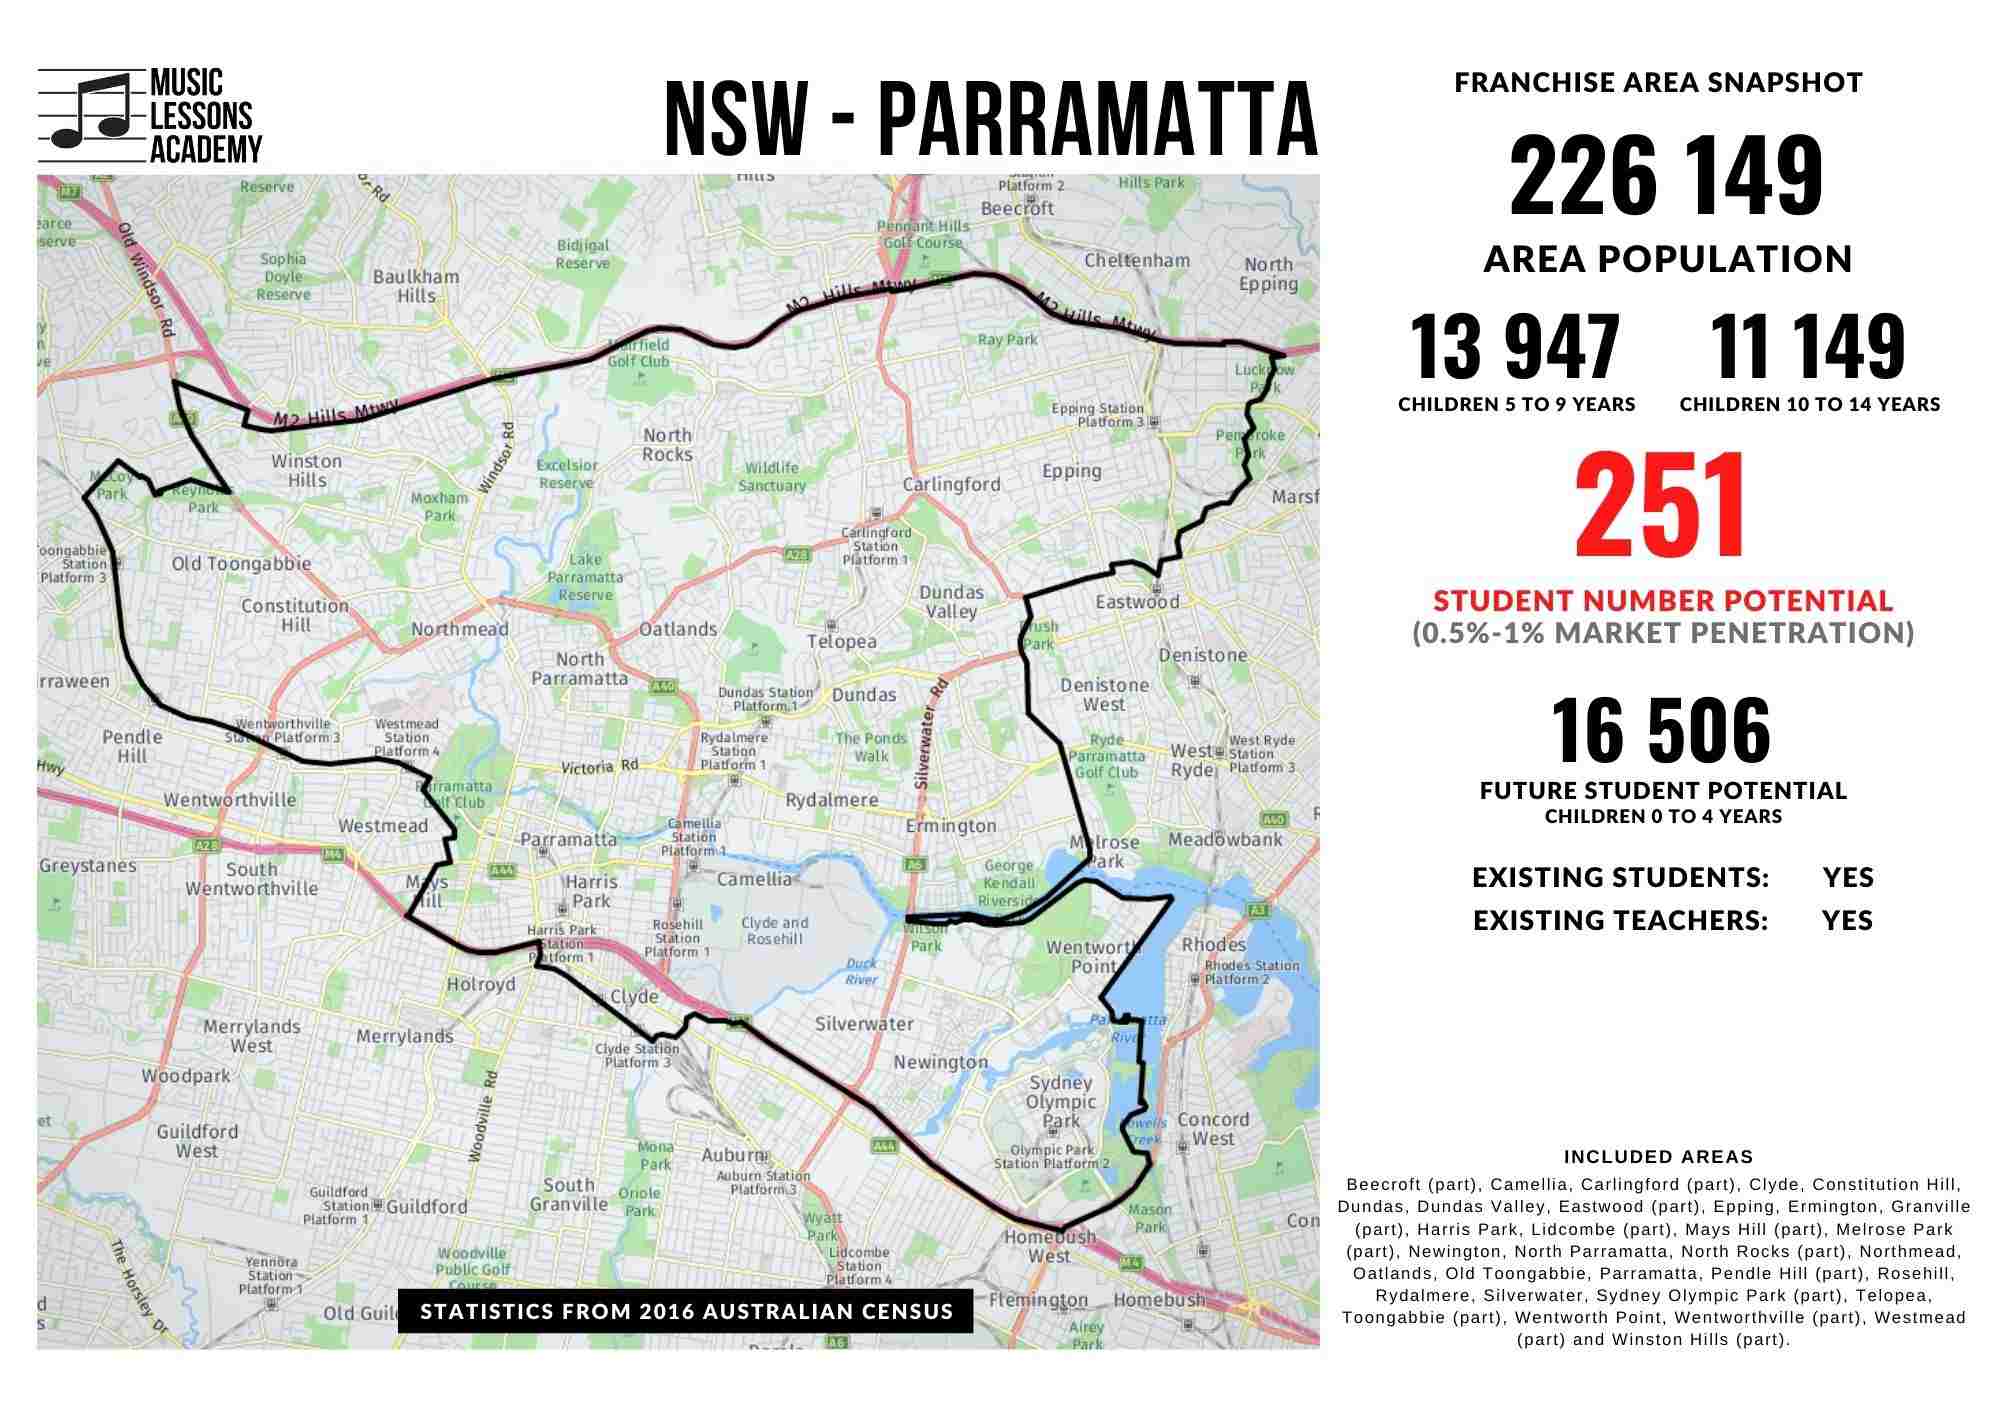 NSW Parramatta Franchise for sale